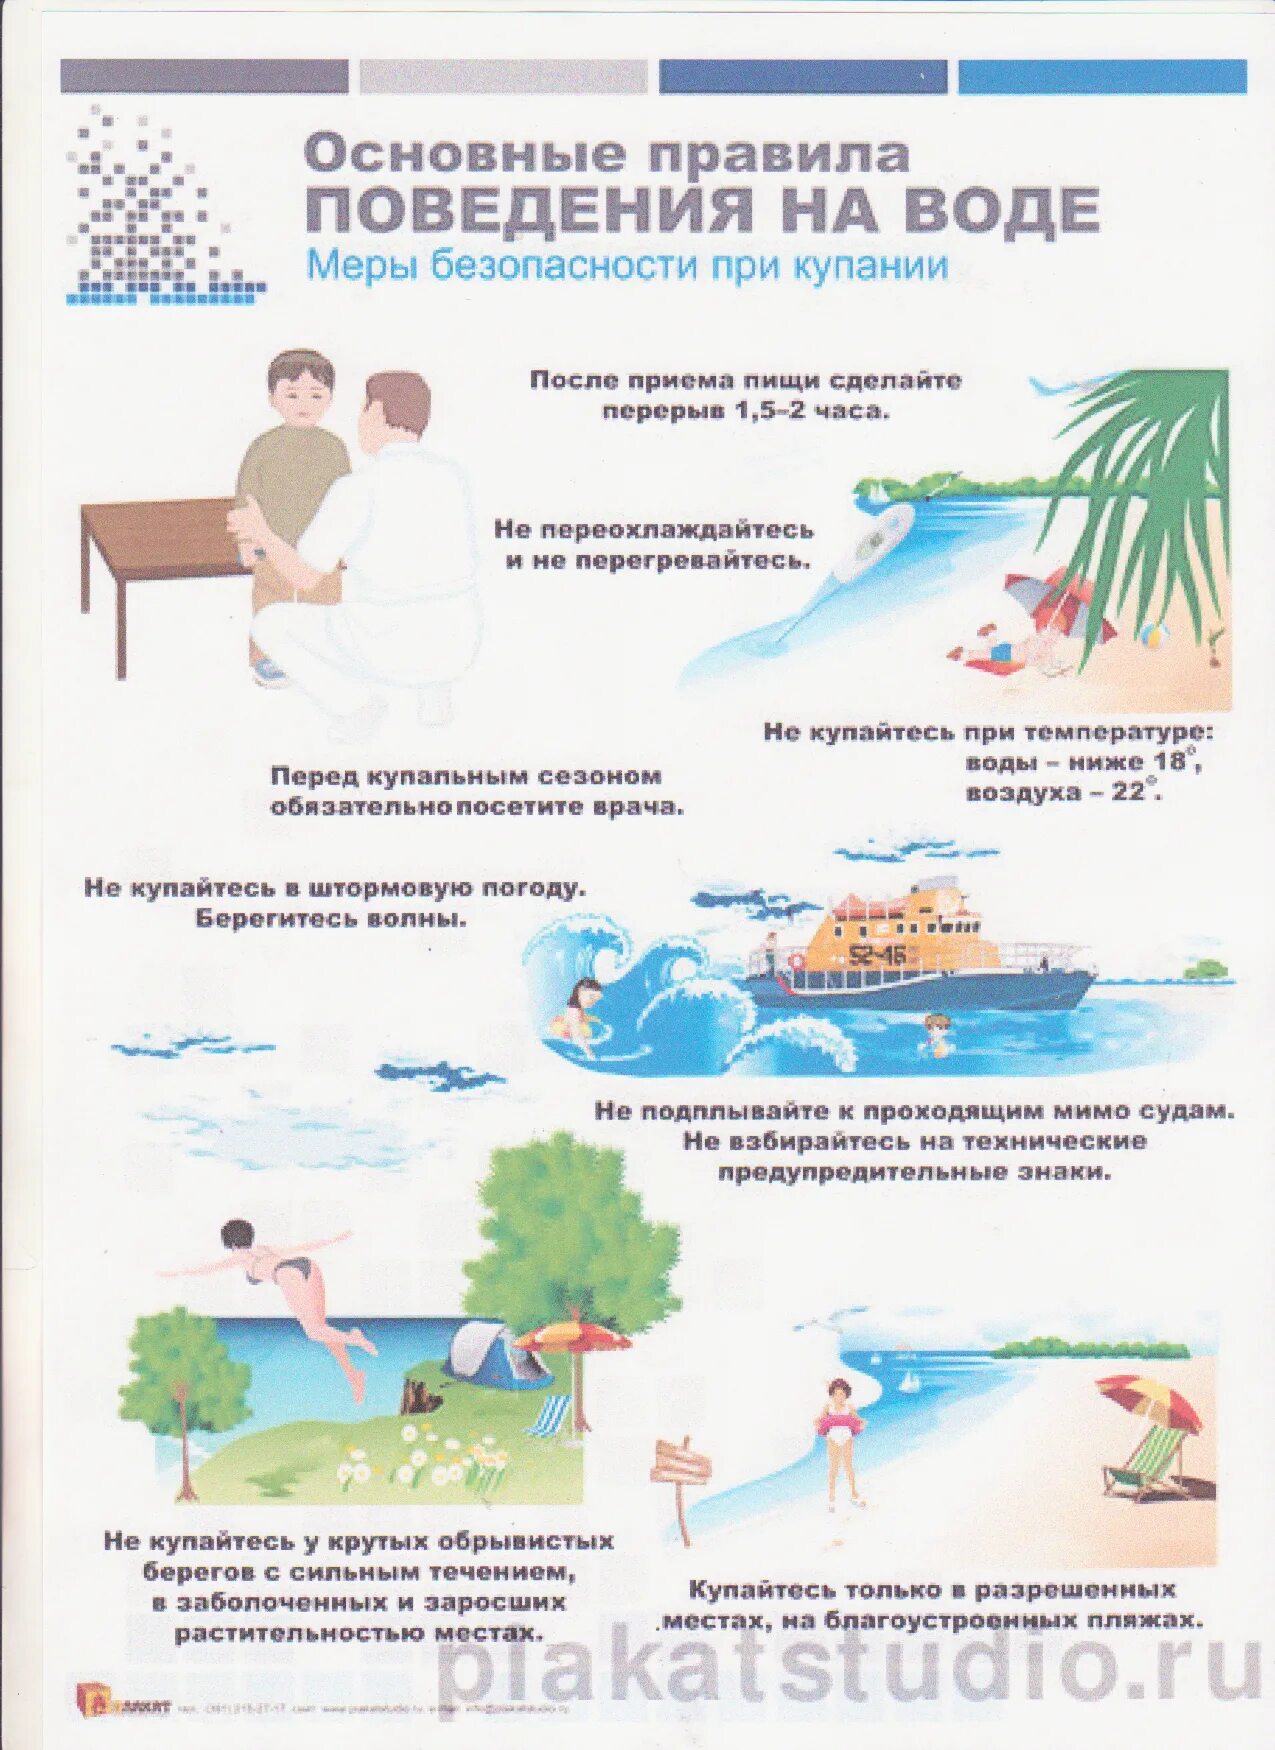 Правила поведения на воде. Основные правила поведения на воле. Правилаповидения на воде. Правила проведения на воде.